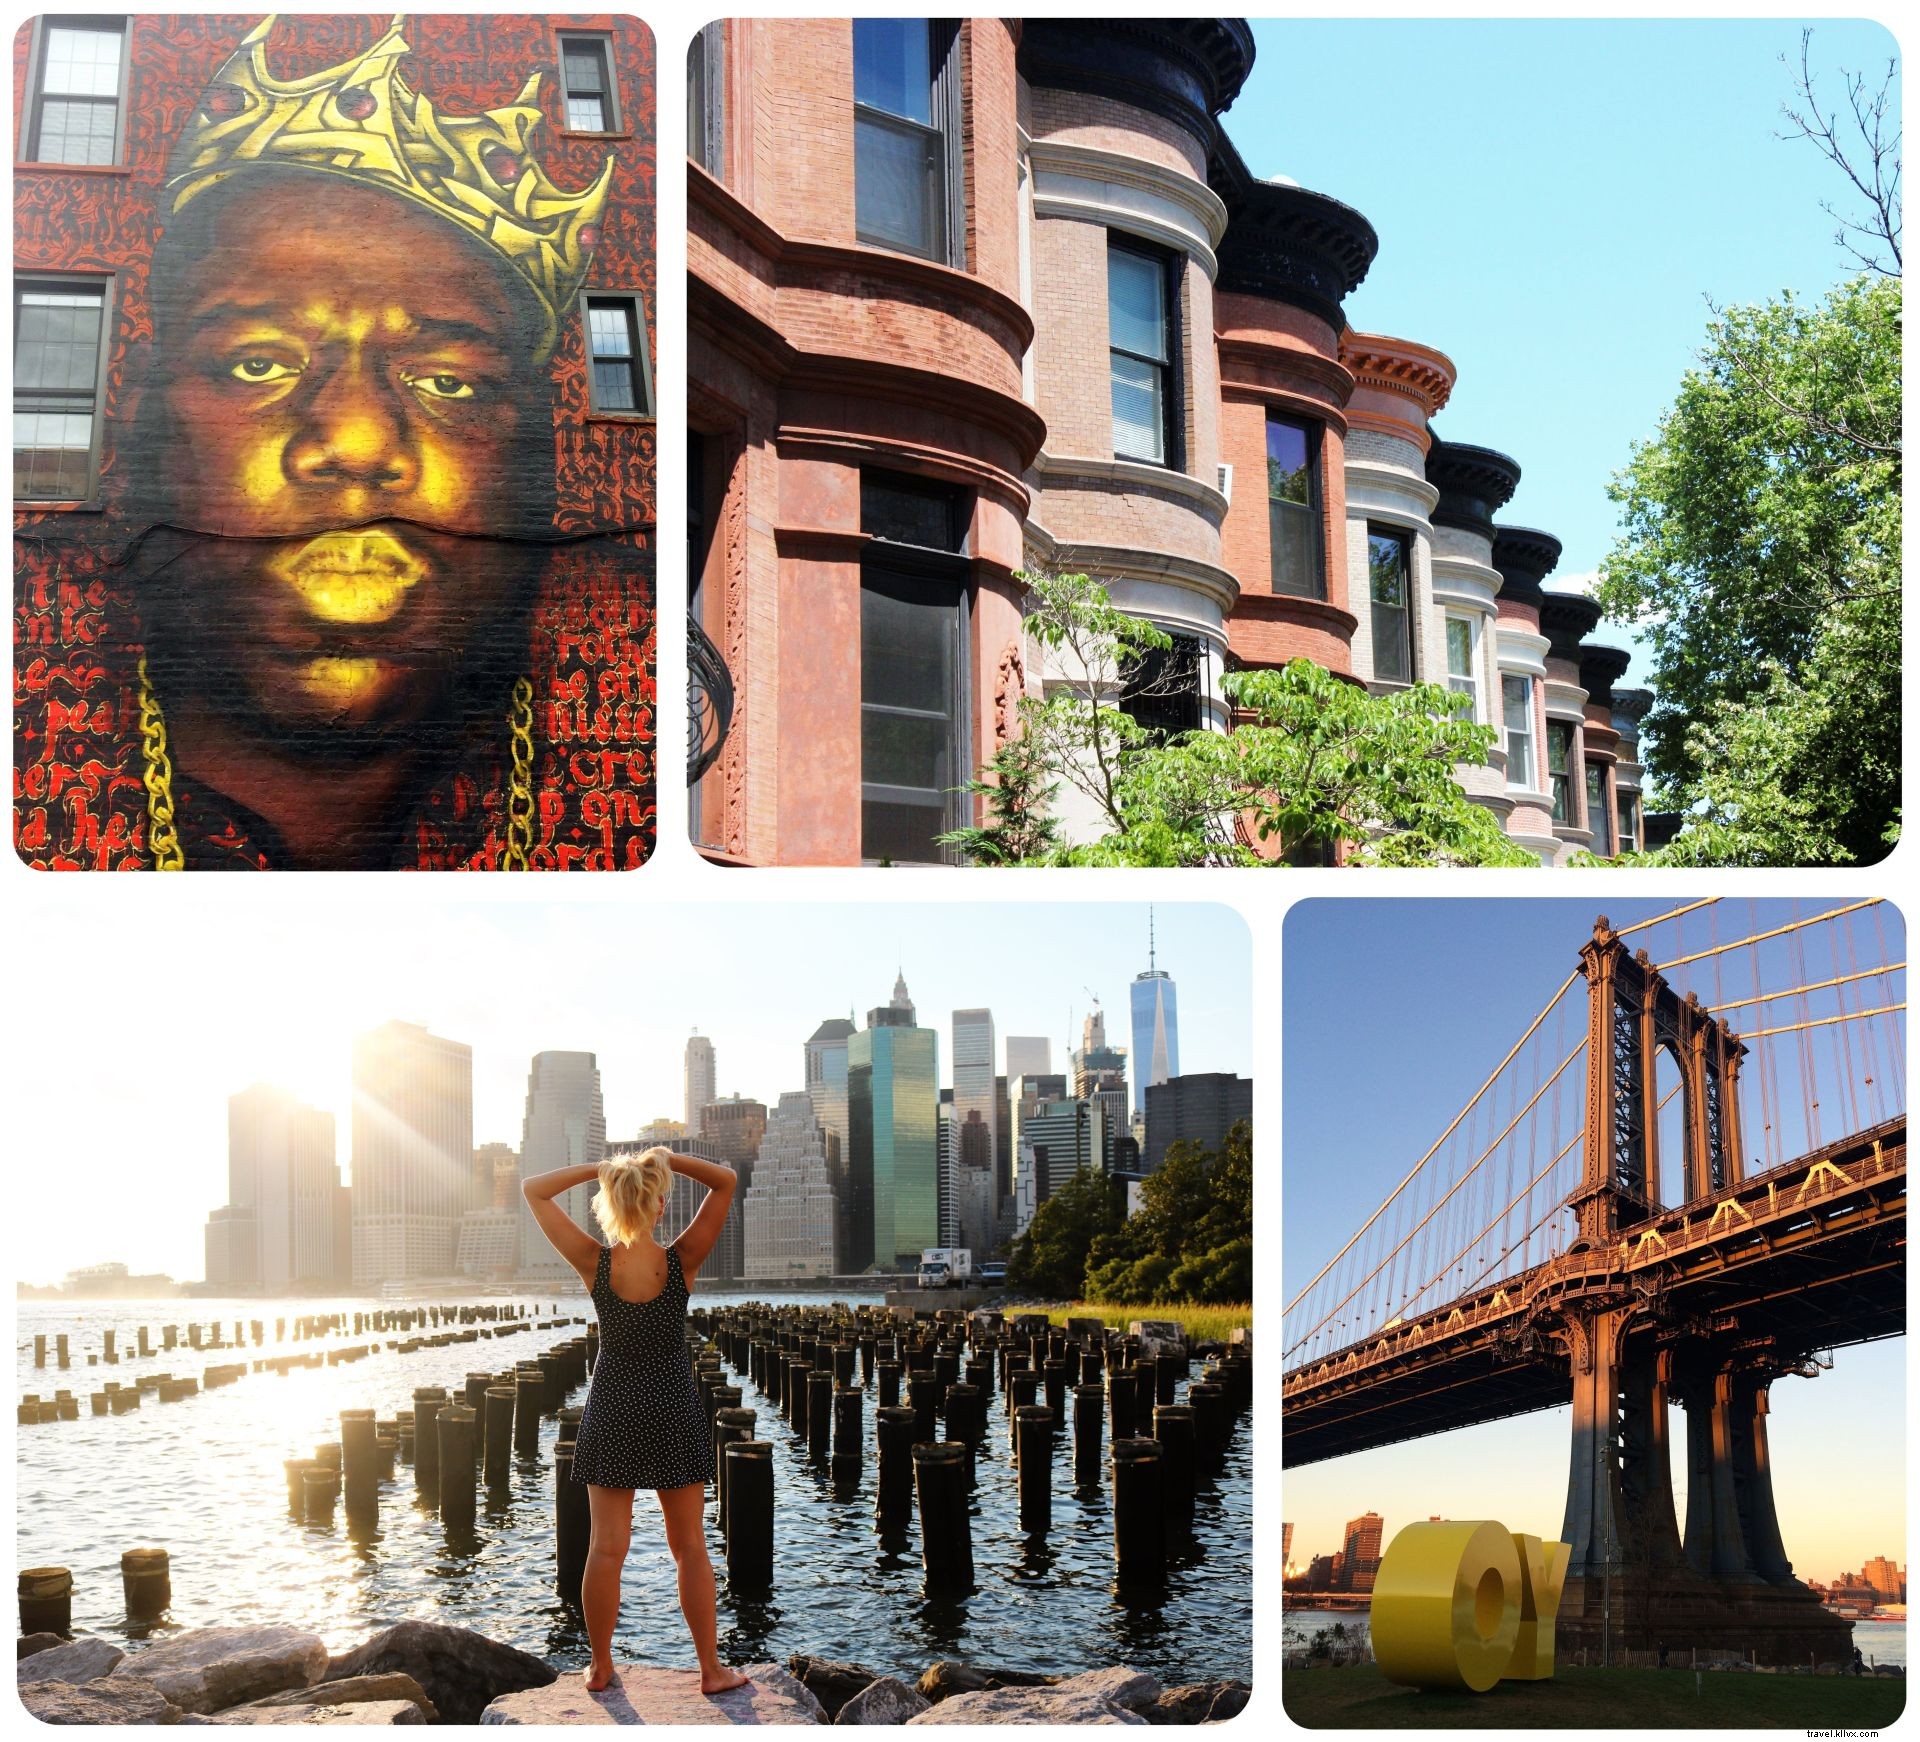 Cinque motivi per visitare Brooklyn